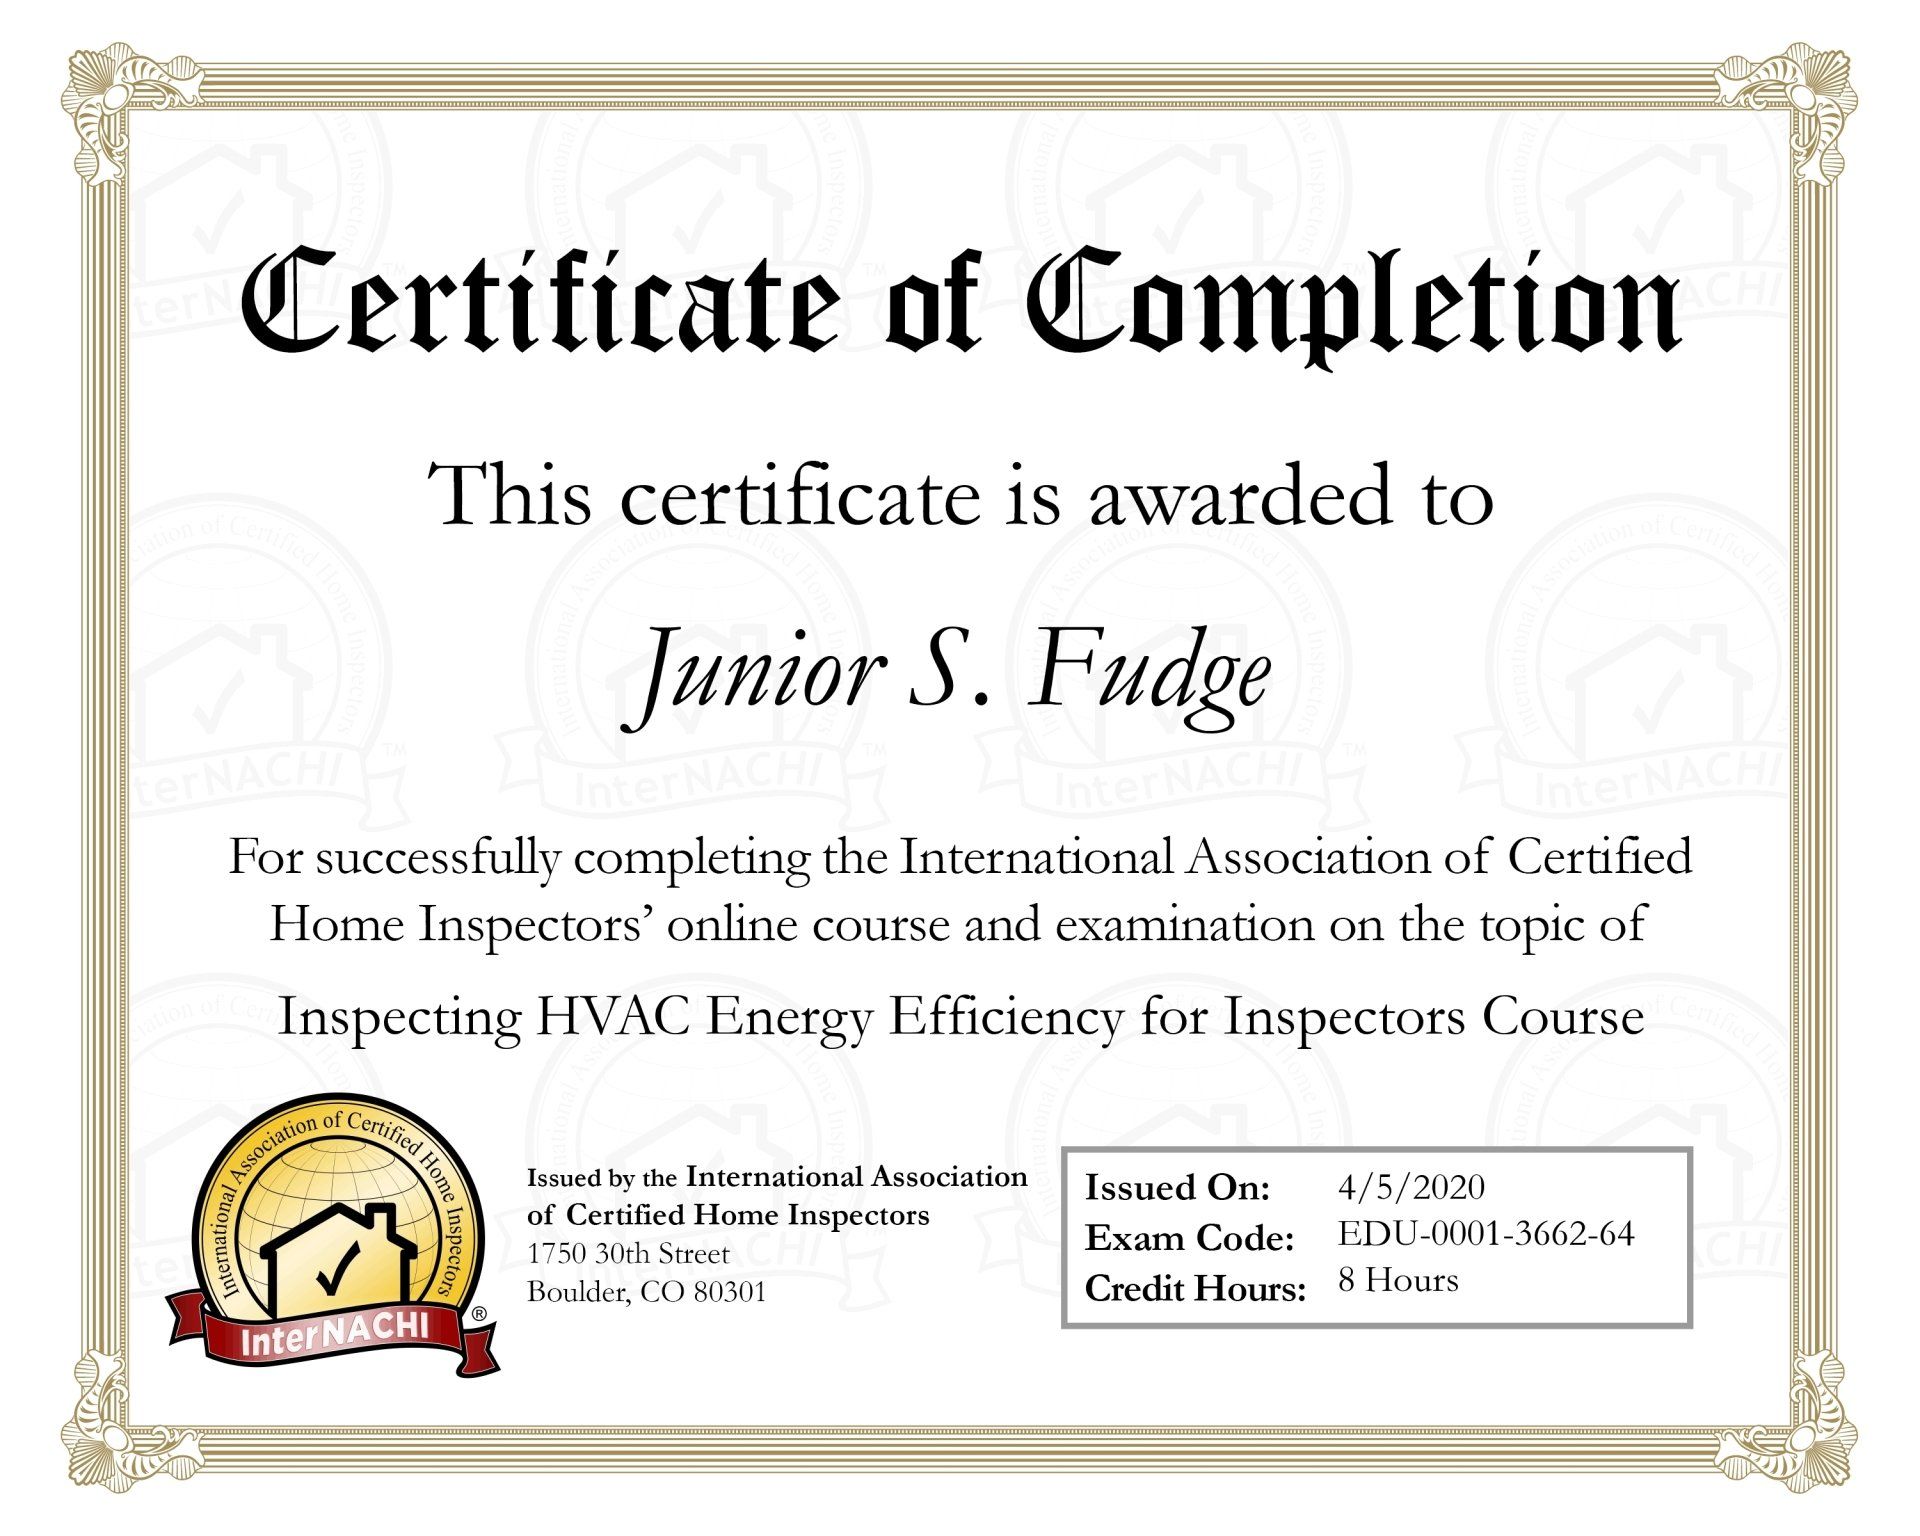 HVAC energy efficiency - Summerside PEI house inspector